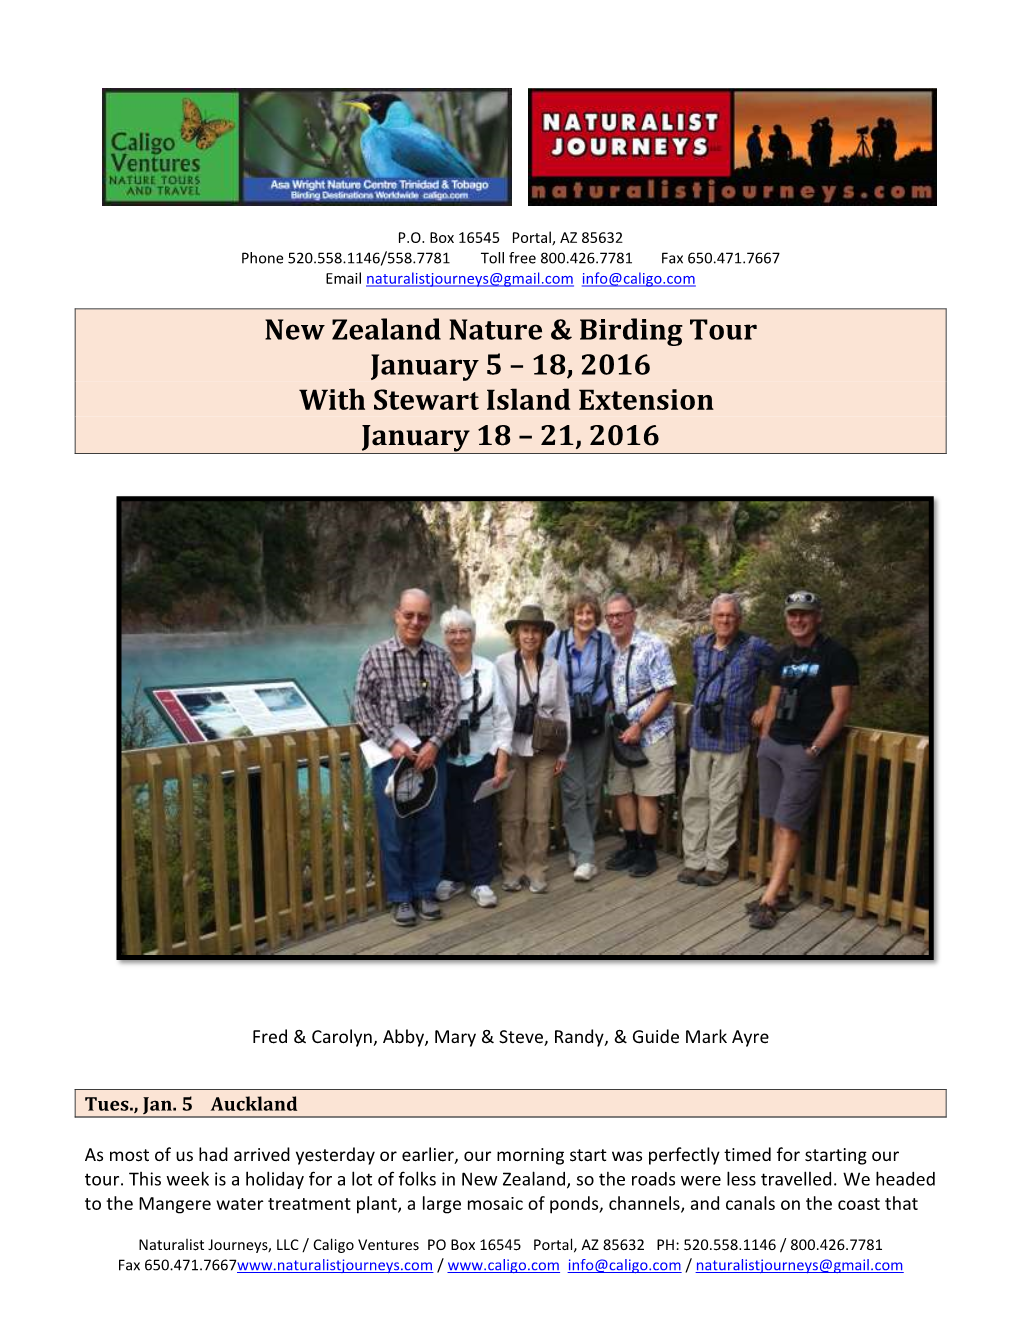 New Zealand Nature & Birding Tour January 5